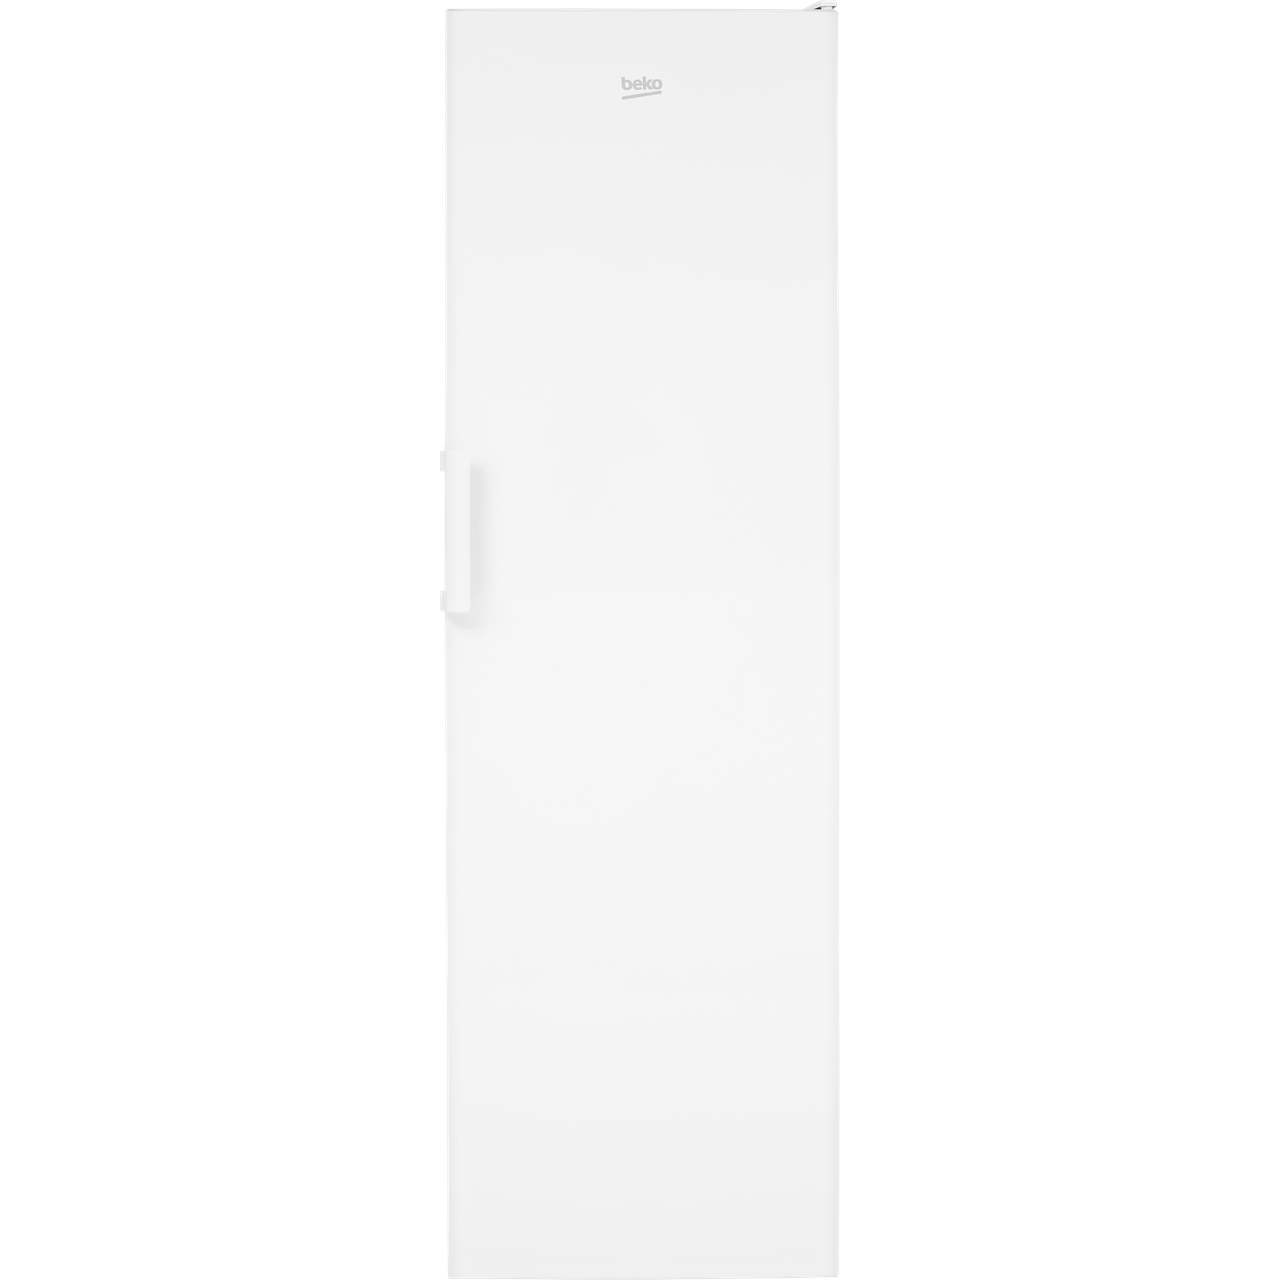 Beko LSP3579W Freestanding Larder Fridge - White *Display Model*